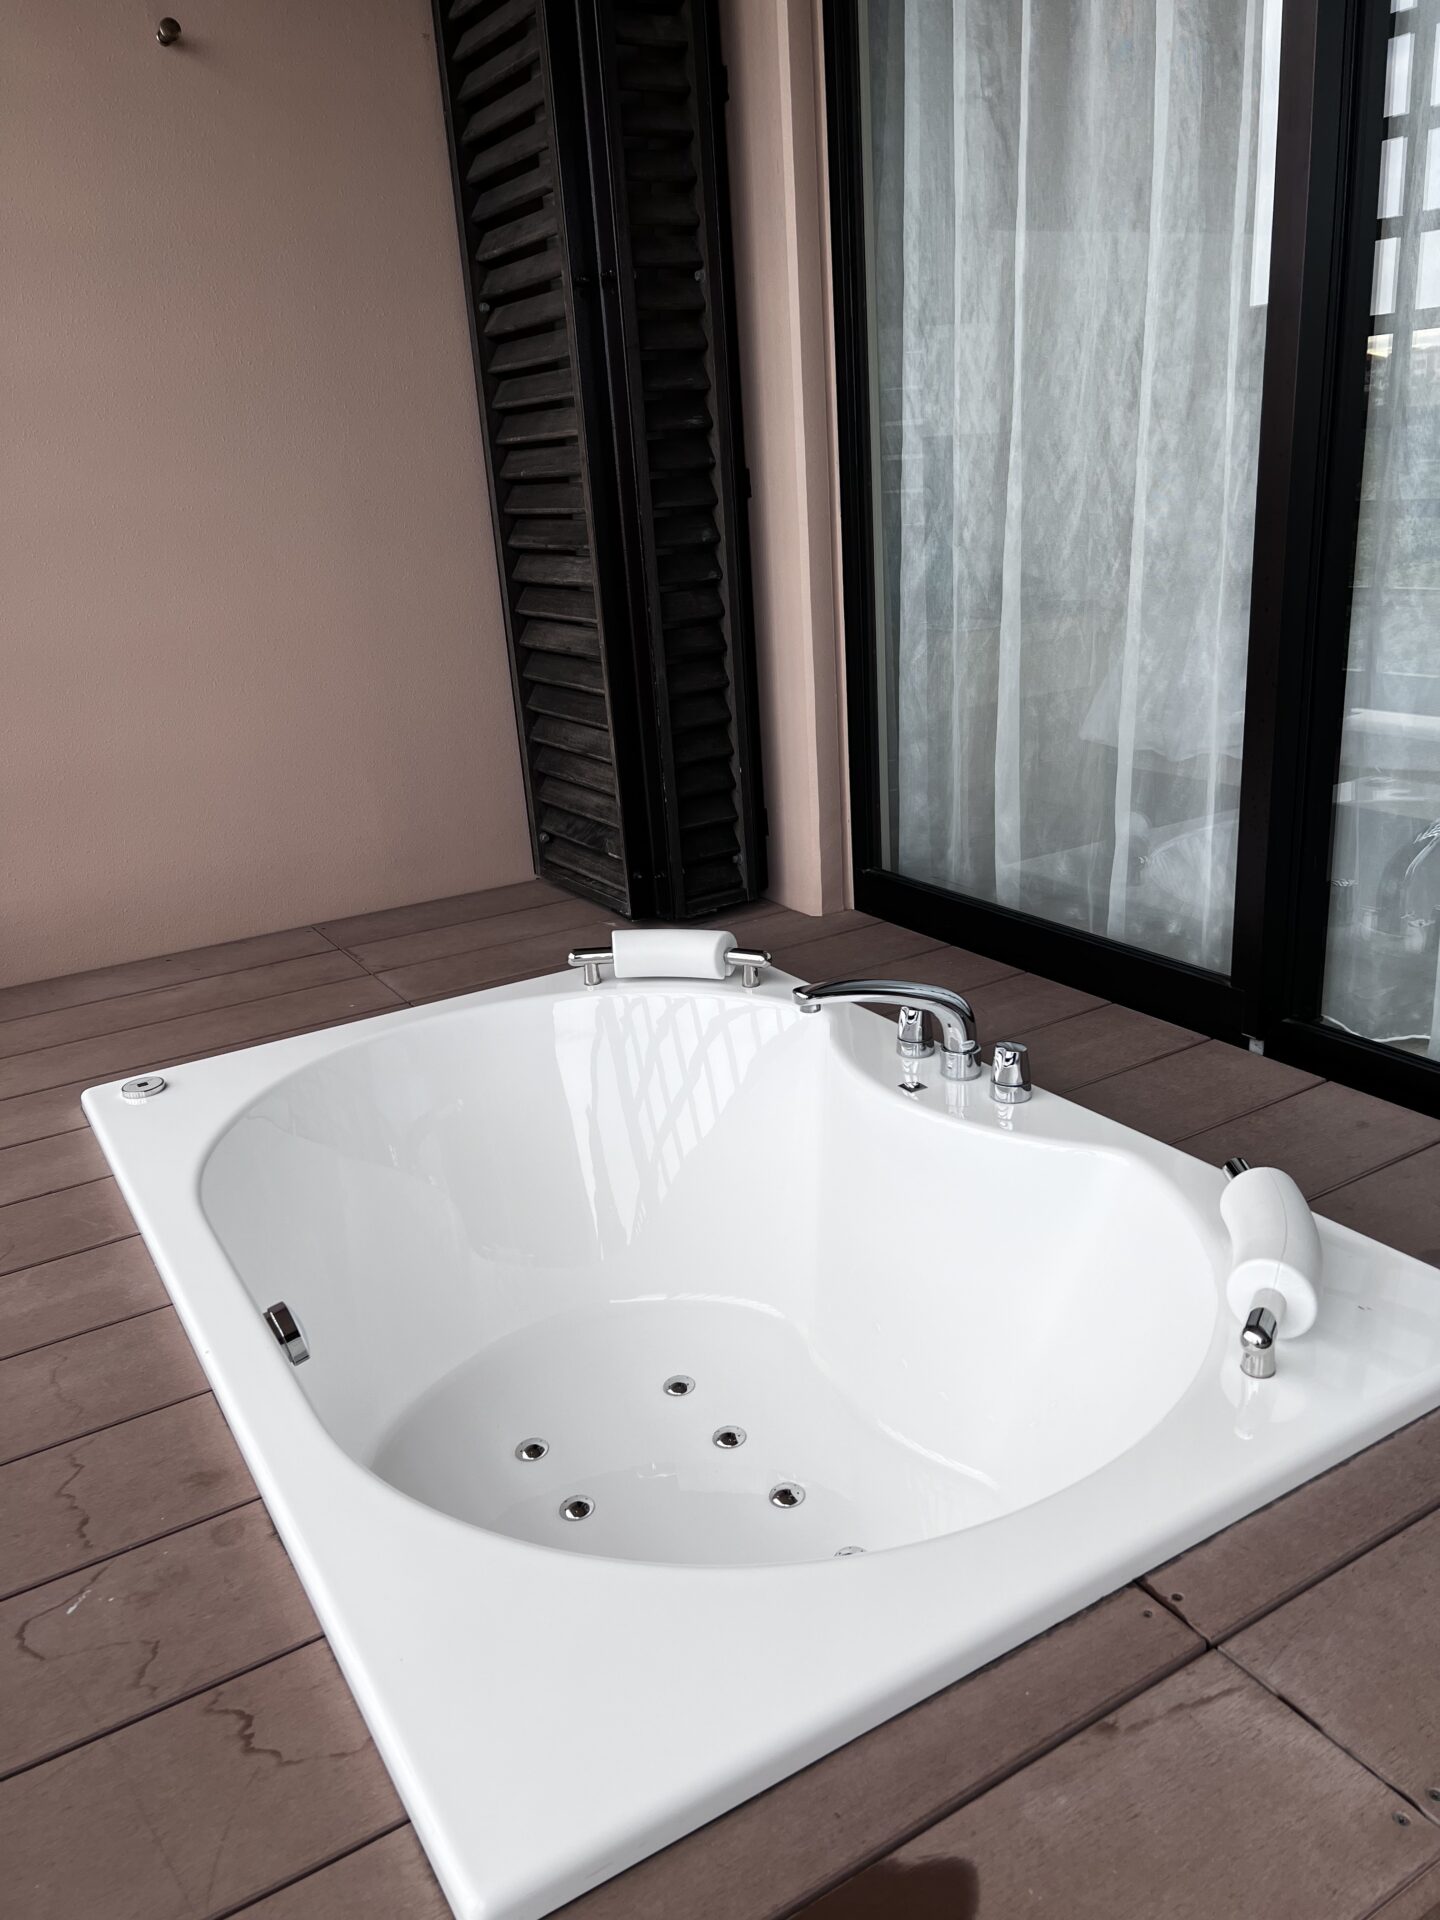 HOTEL SHIGIRA MIRAGE テラスの浴槽